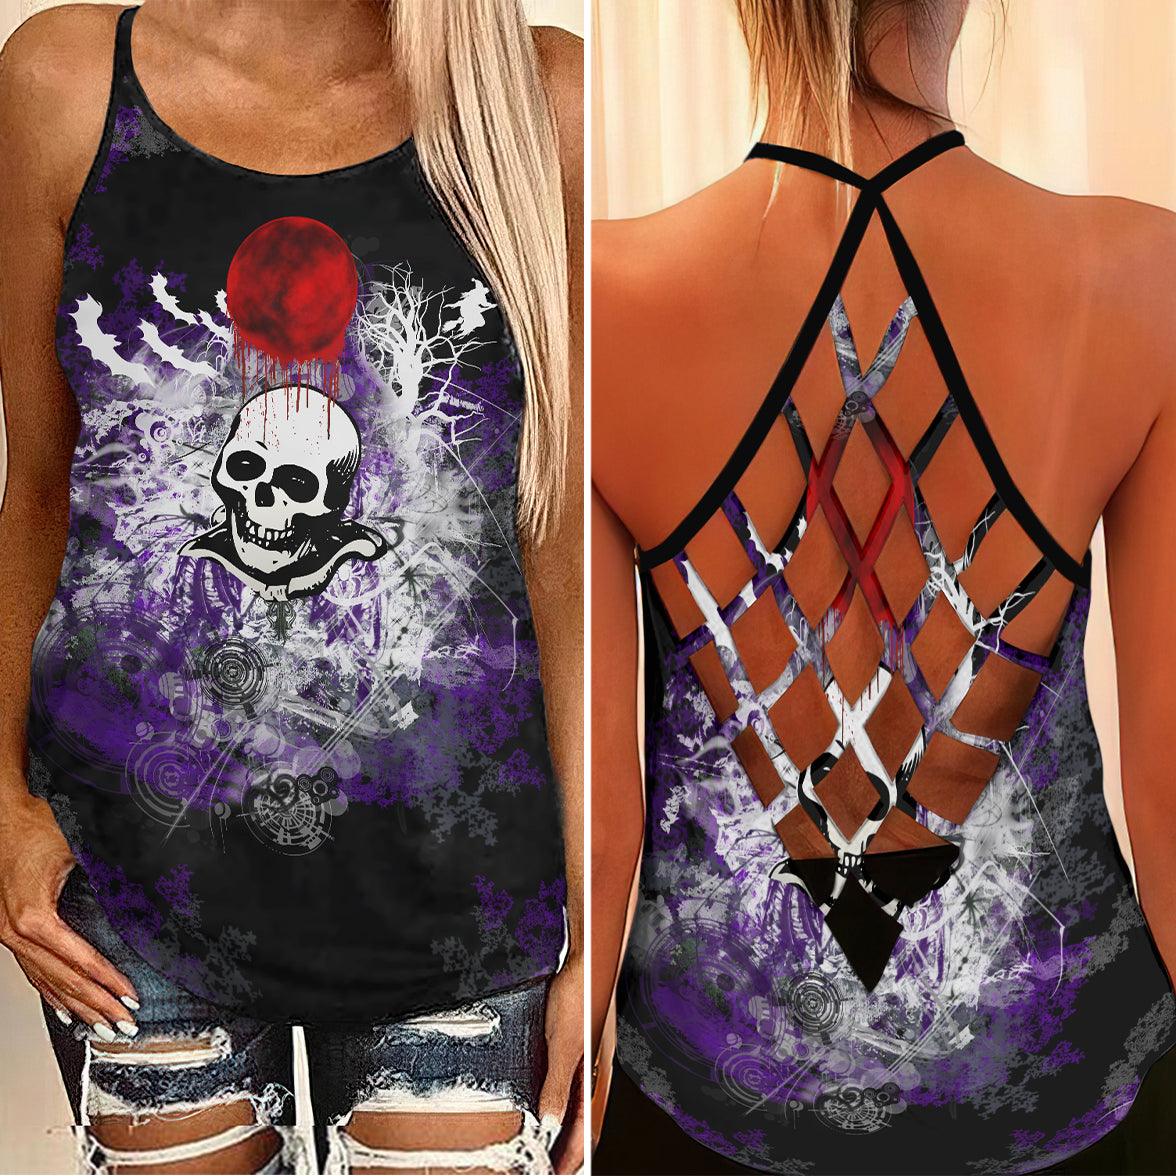 Bloody Moon Skull Rose Criss-Cross Open Back Tank Top, Trending T-Shirt For Women - Wonder Skull